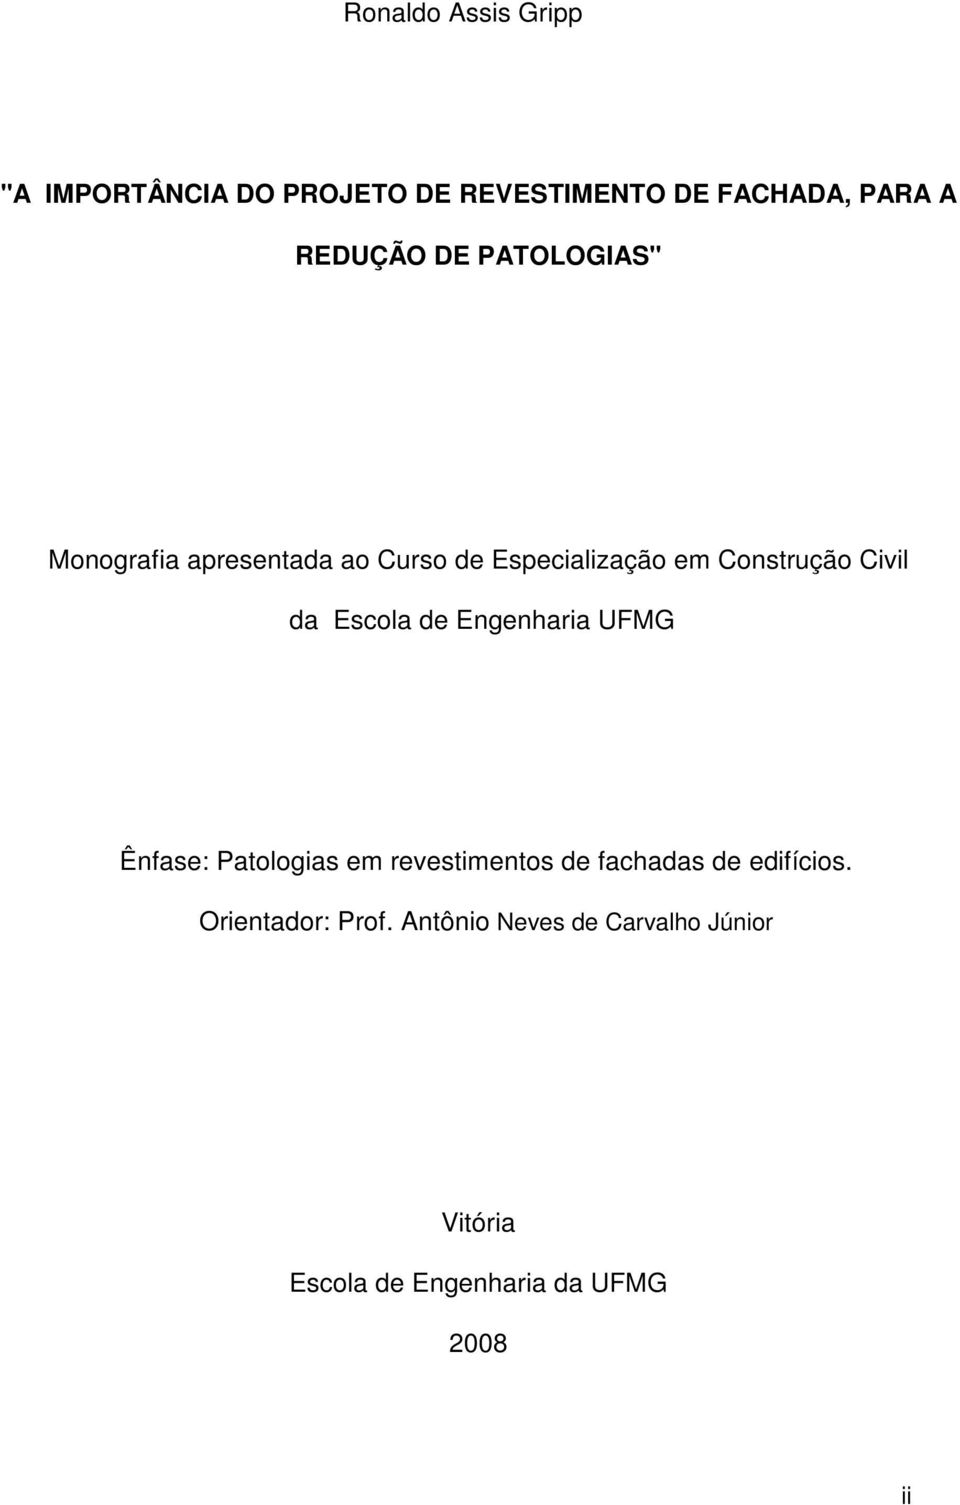 Escola de Engenharia UFMG Ênfase: Patologias em revestimentos de fachadas de edifícios.